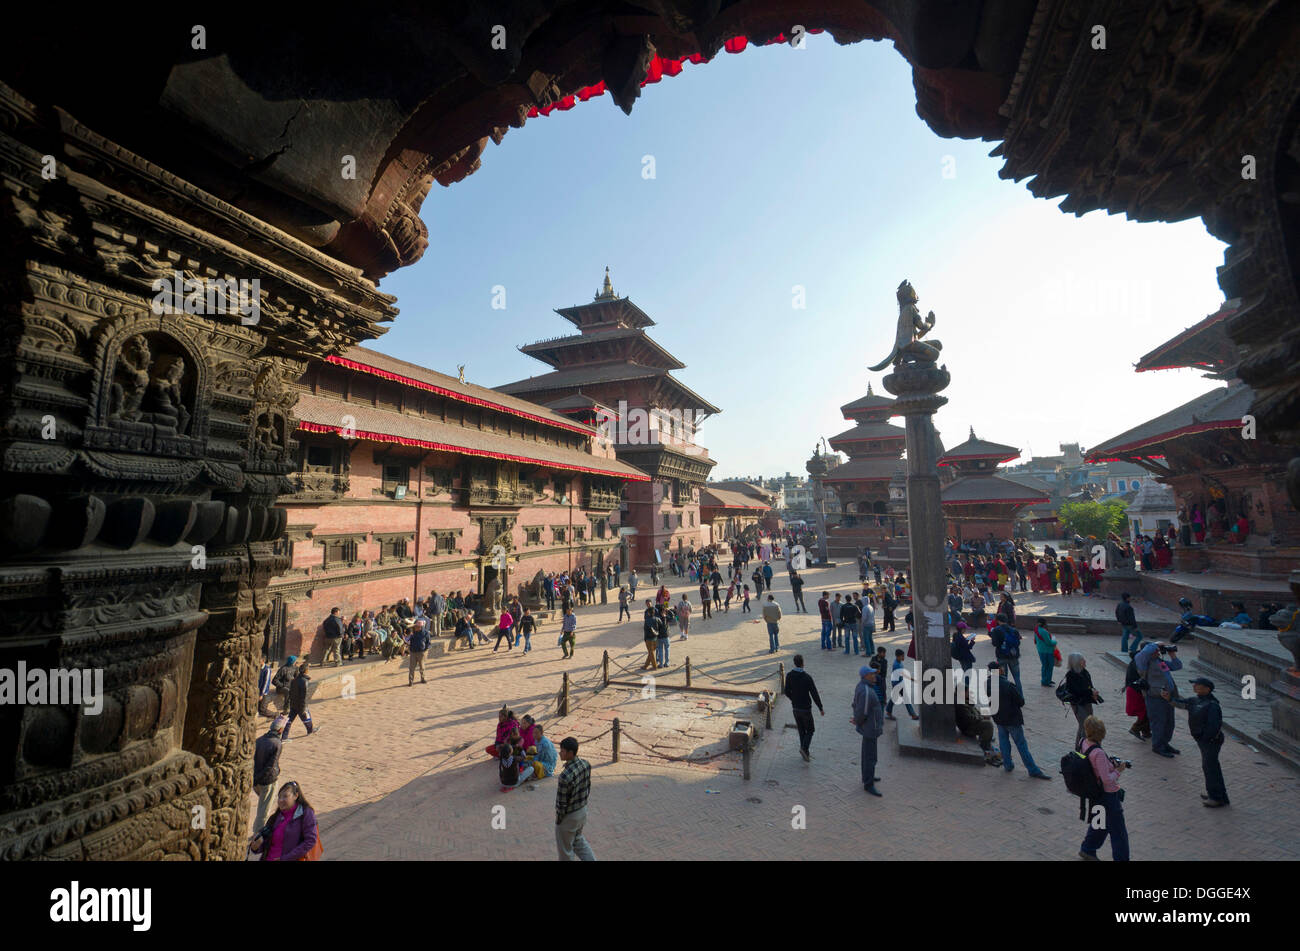 Des temples hindous et des monuments bouddhiques sur Patan Durbar Square, Patan, Lalitpur, District Zone Bagmati, Népal Banque D'Images